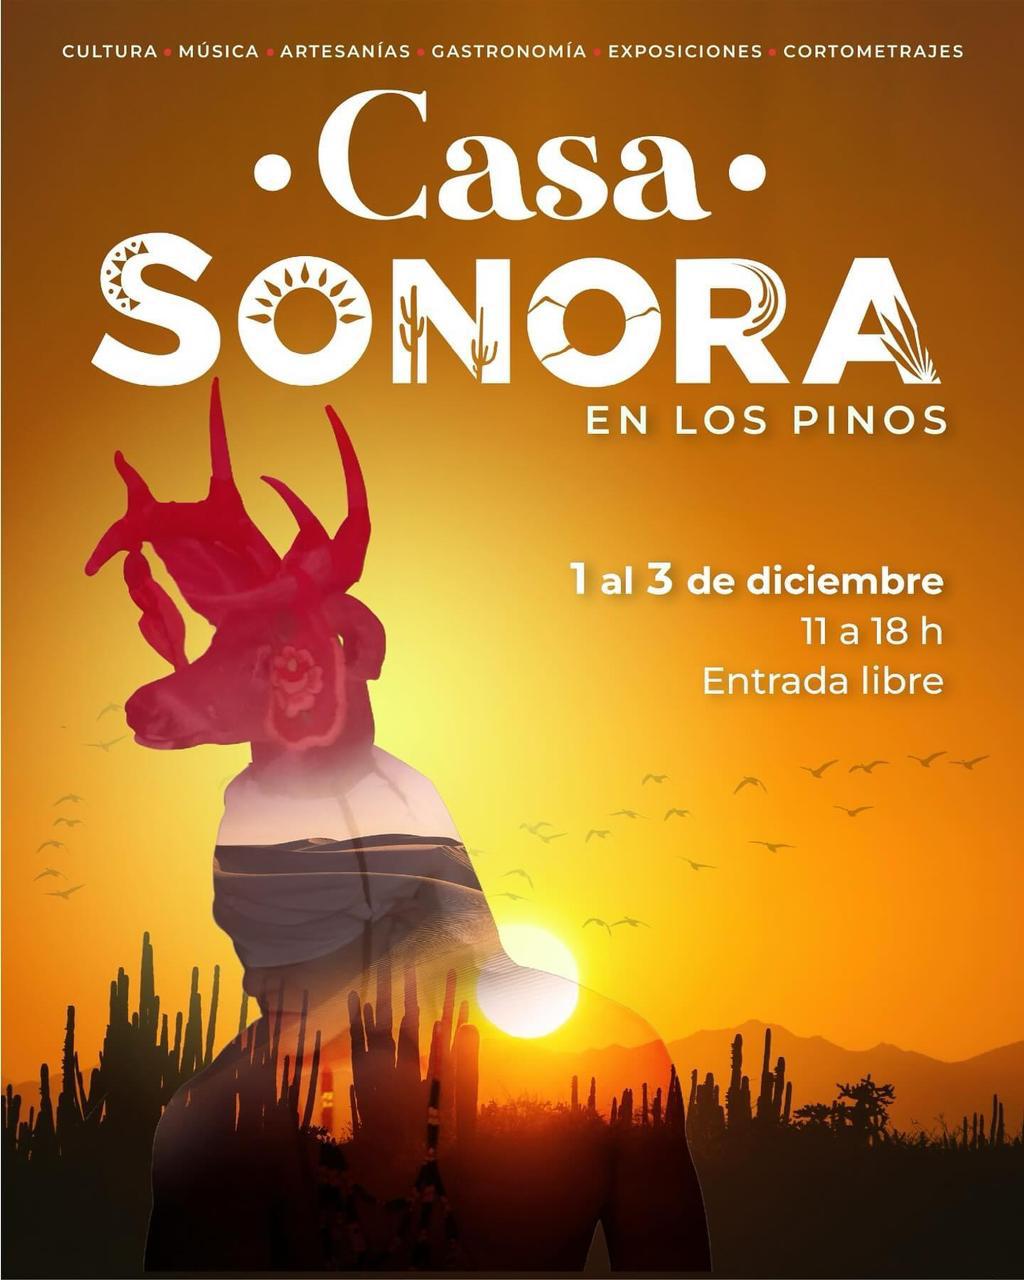 Lista Sonora para participar en el recinto cultural de Los Pinos